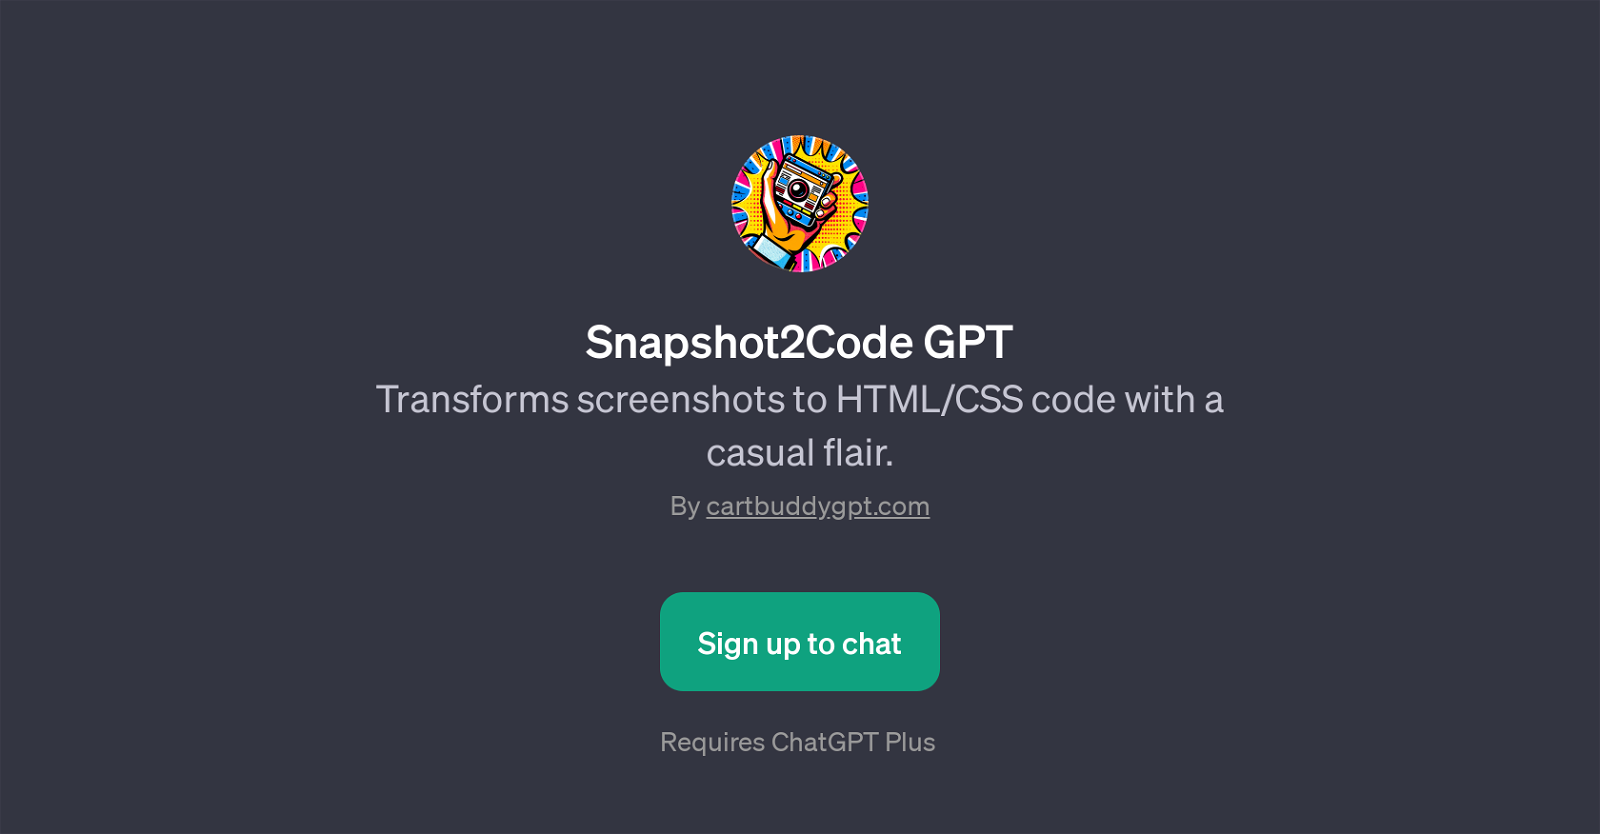 Snapshot2Code GPT website